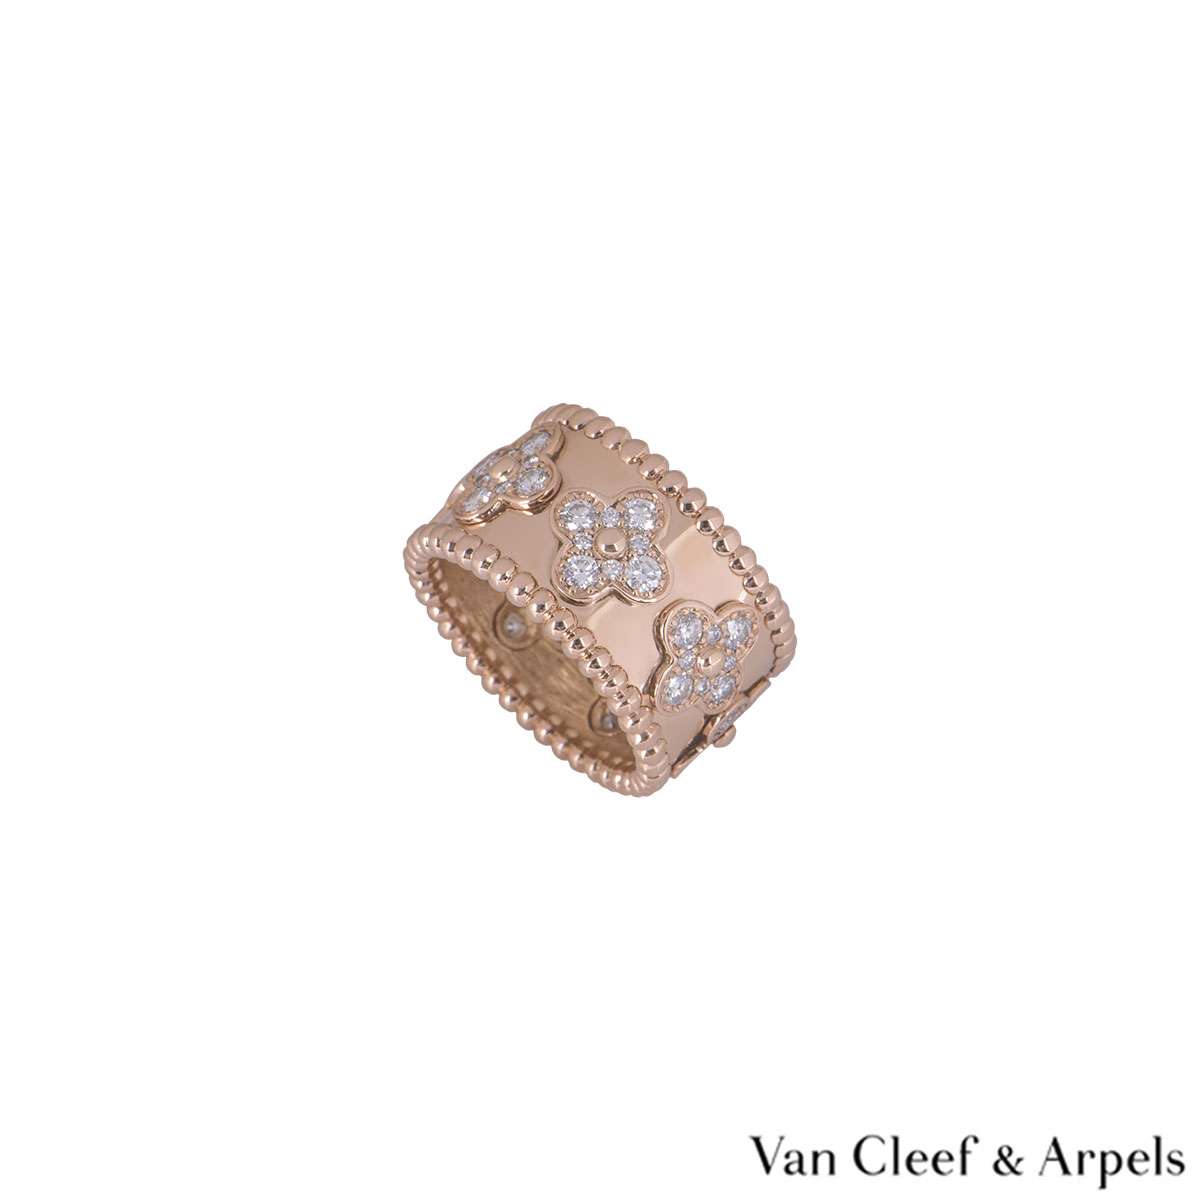 VAN CLEEF & ARPELS Perlée Clovers Ring 18K RG Diamonds 55